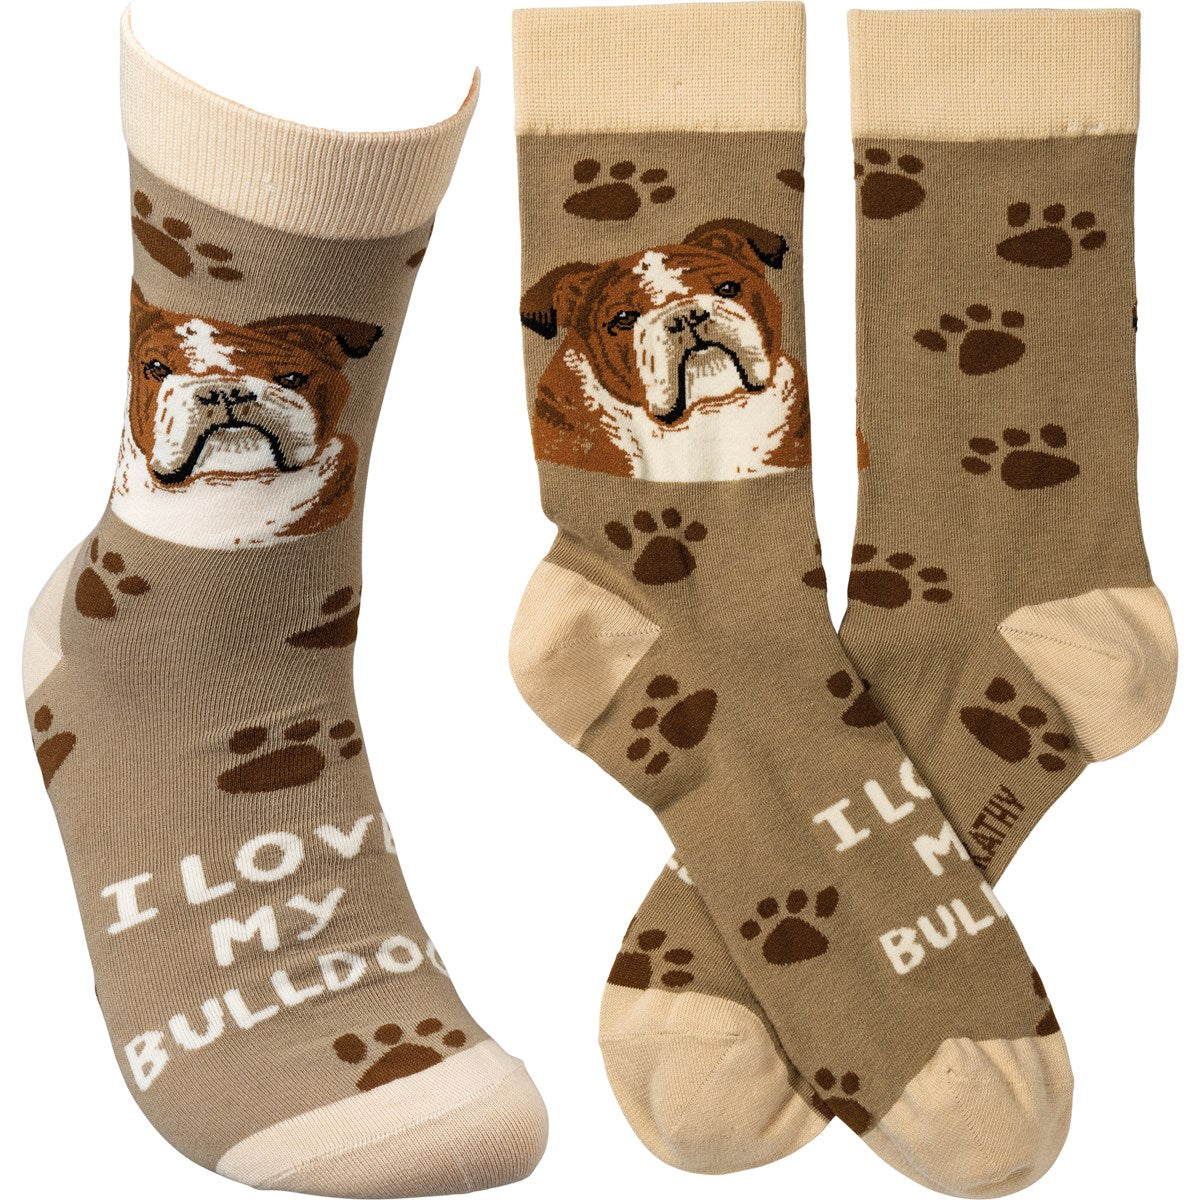 Bull dog socks